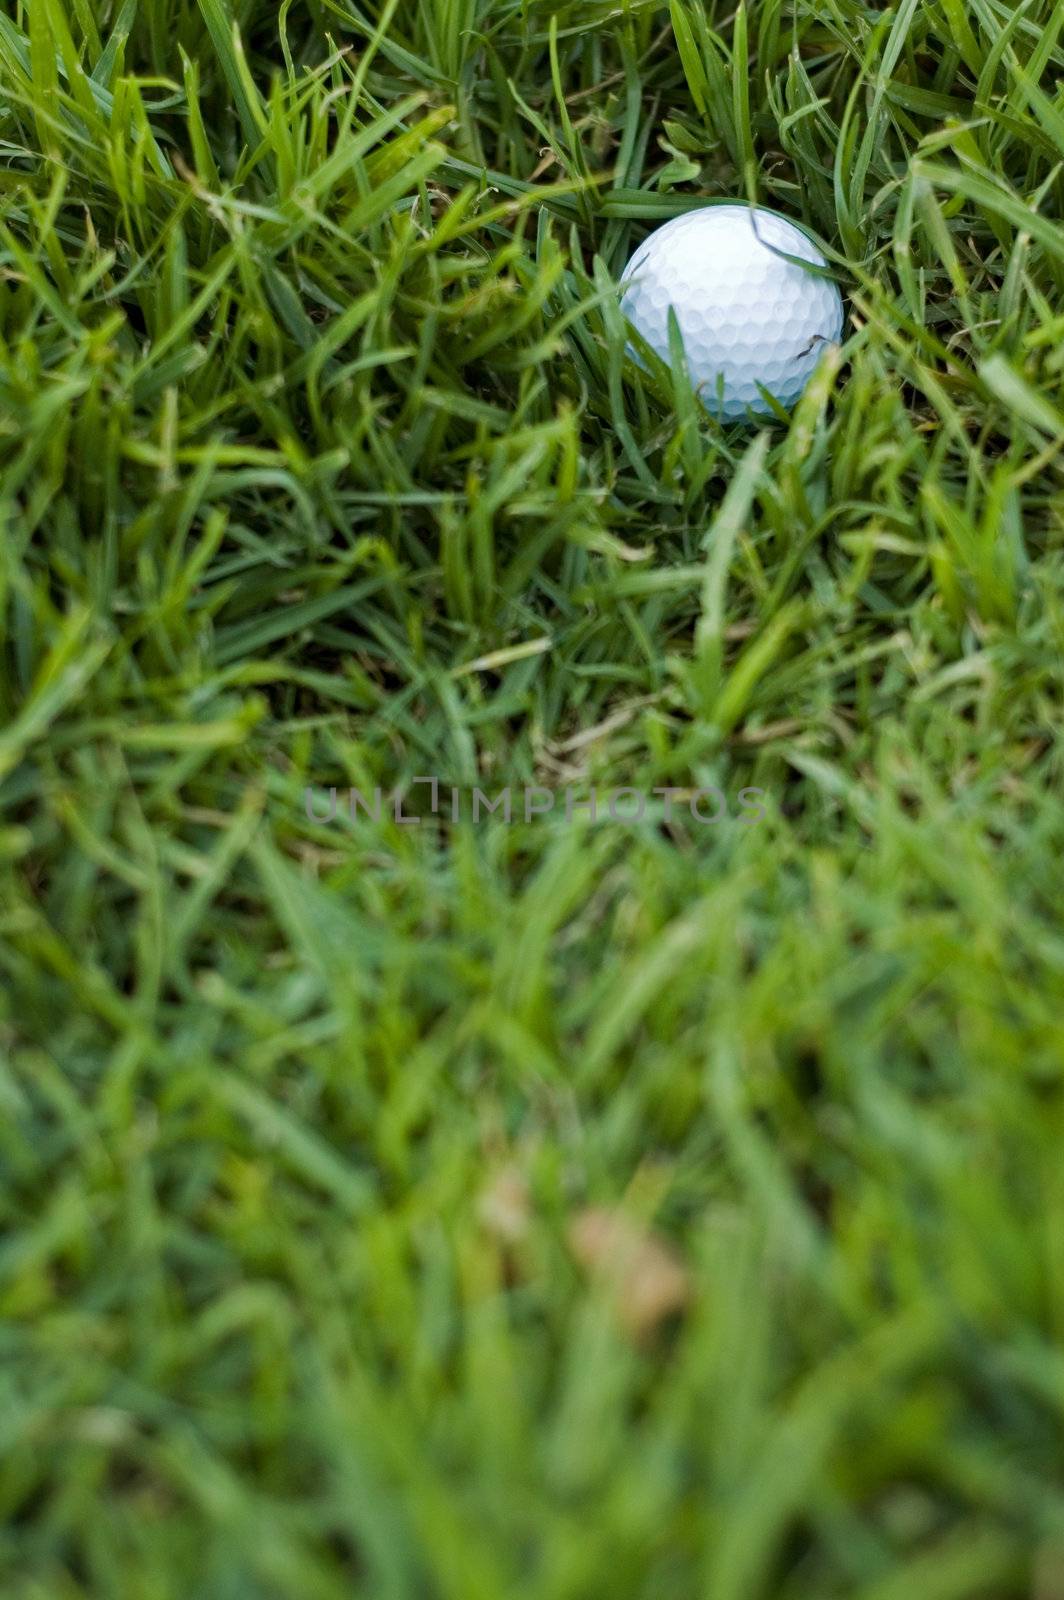 Golf ball in long rough grass - a bad lie